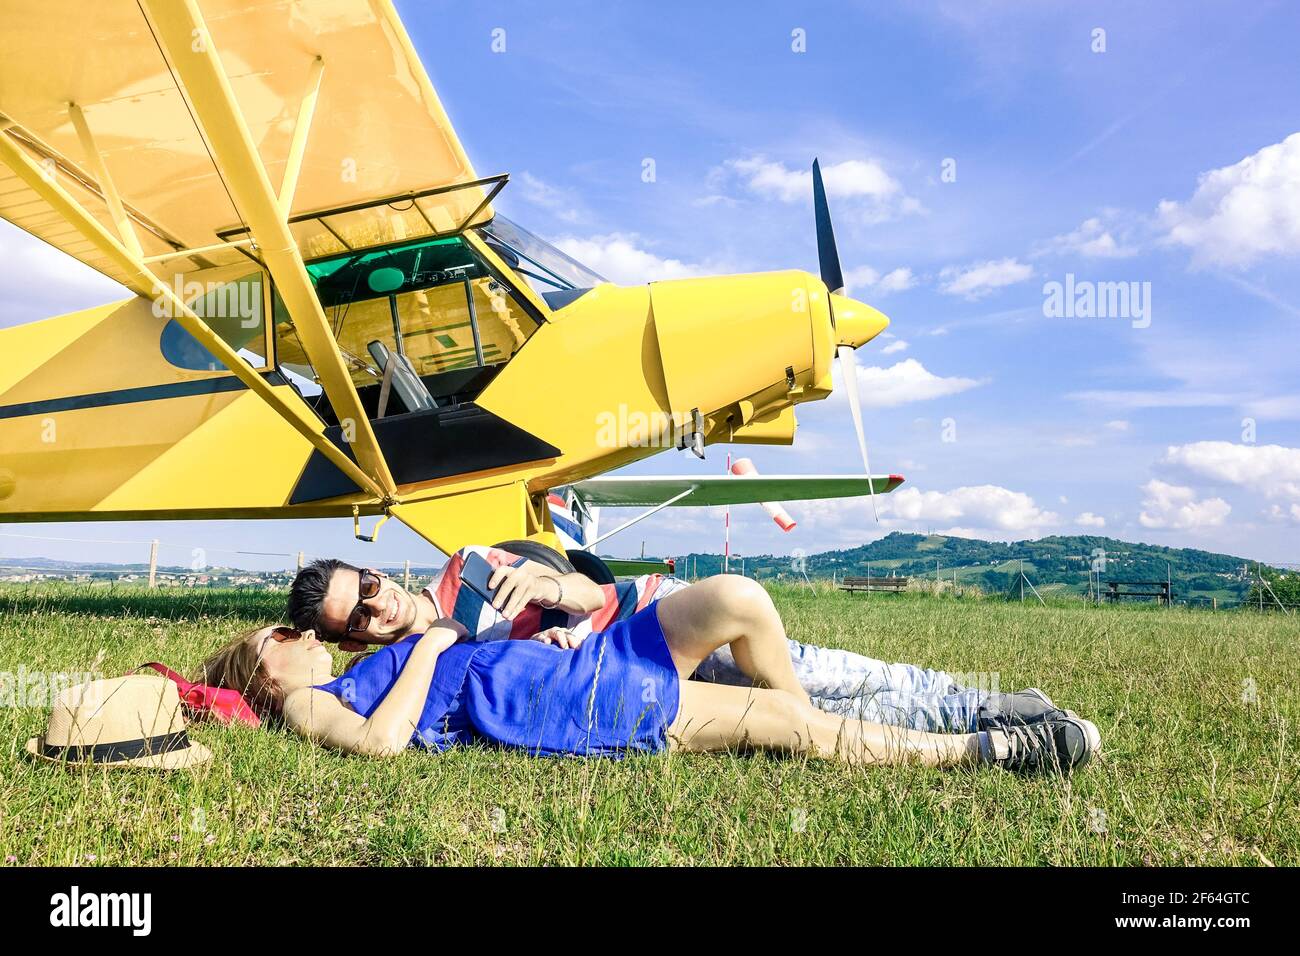 Coppia rilassata di amanti che hanno un riposo durante l'aereo charter Escursione - concetto Wanderlust di vita alternativa delle persone che viaggiano intorno mondo Foto Stock